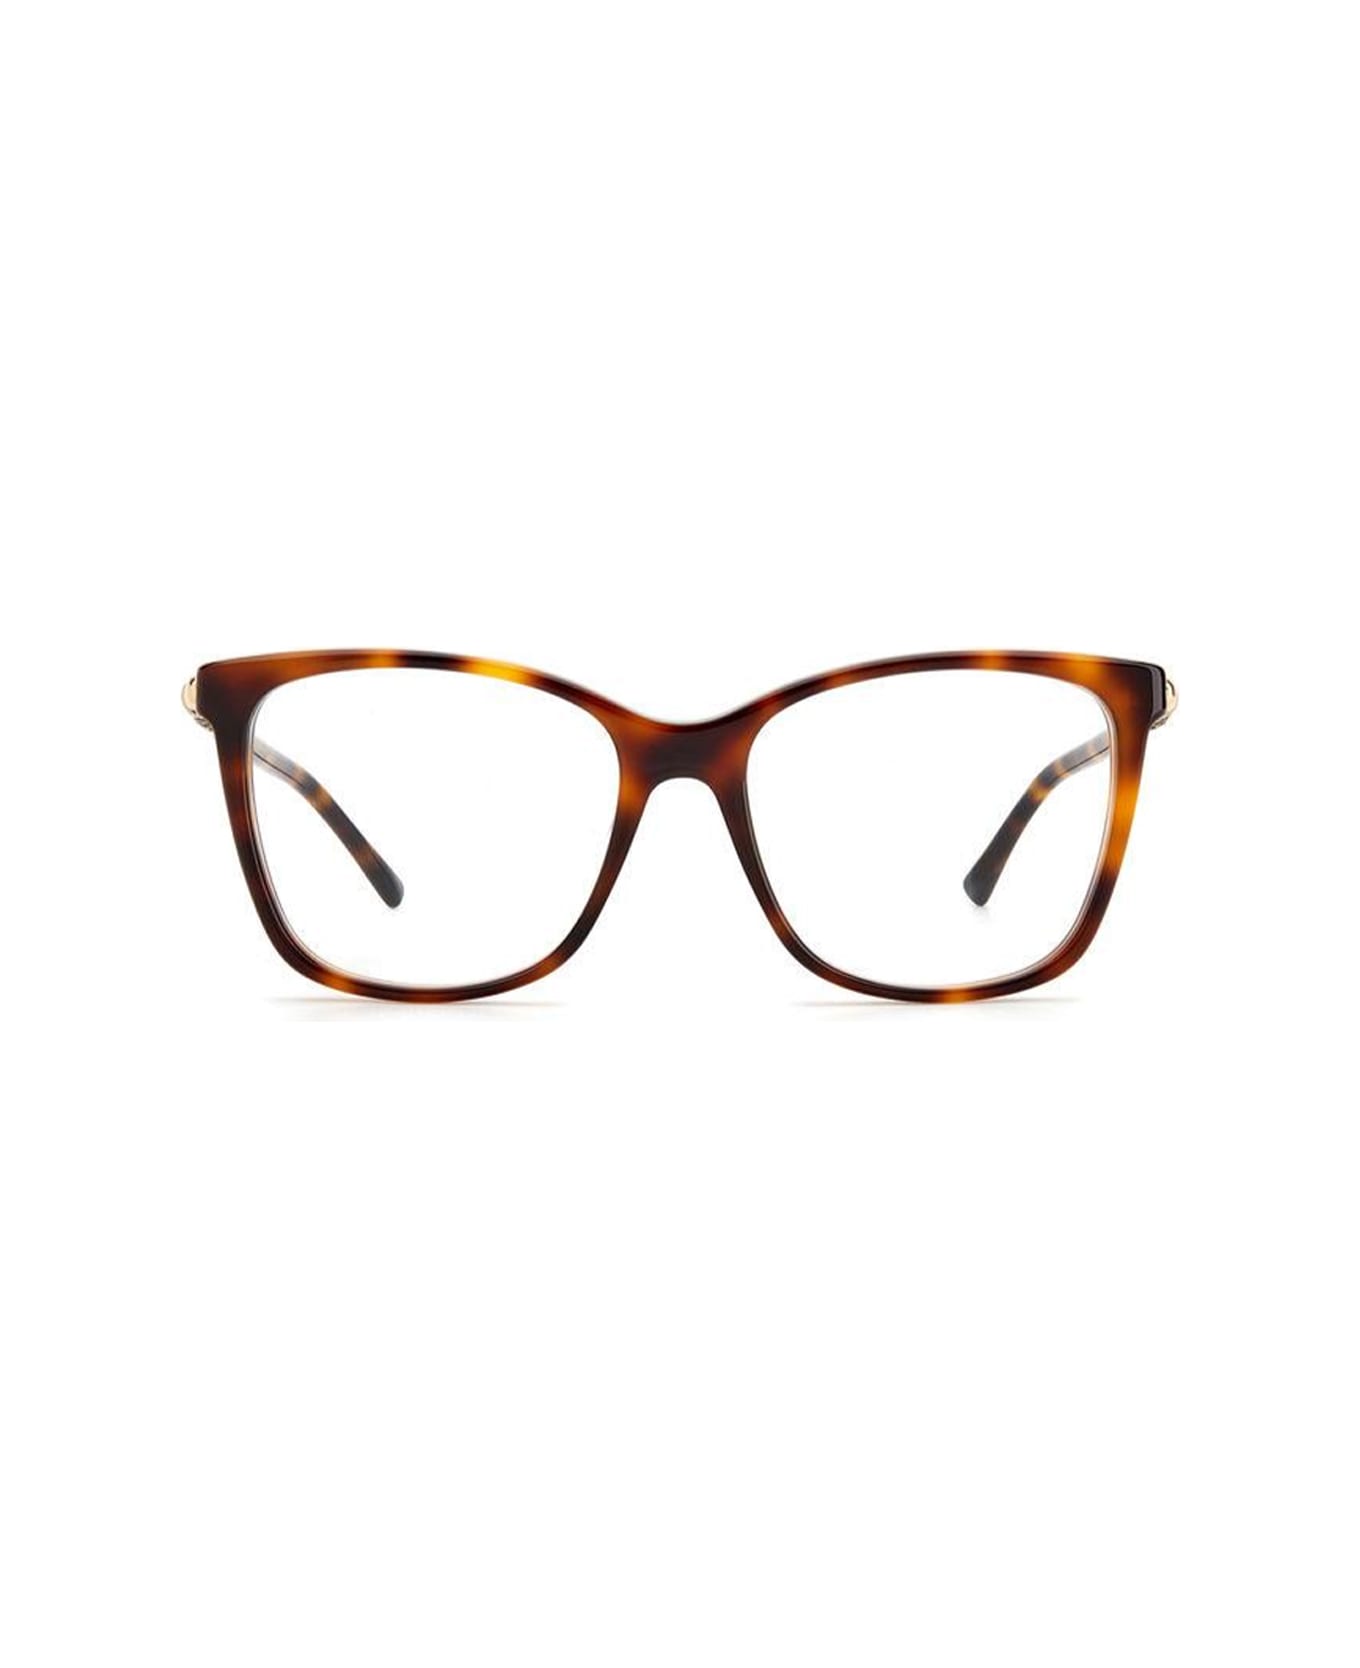 Jimmy Choo Eyewear Jc294/g 086/17 Glasses - Marrone アイウェア